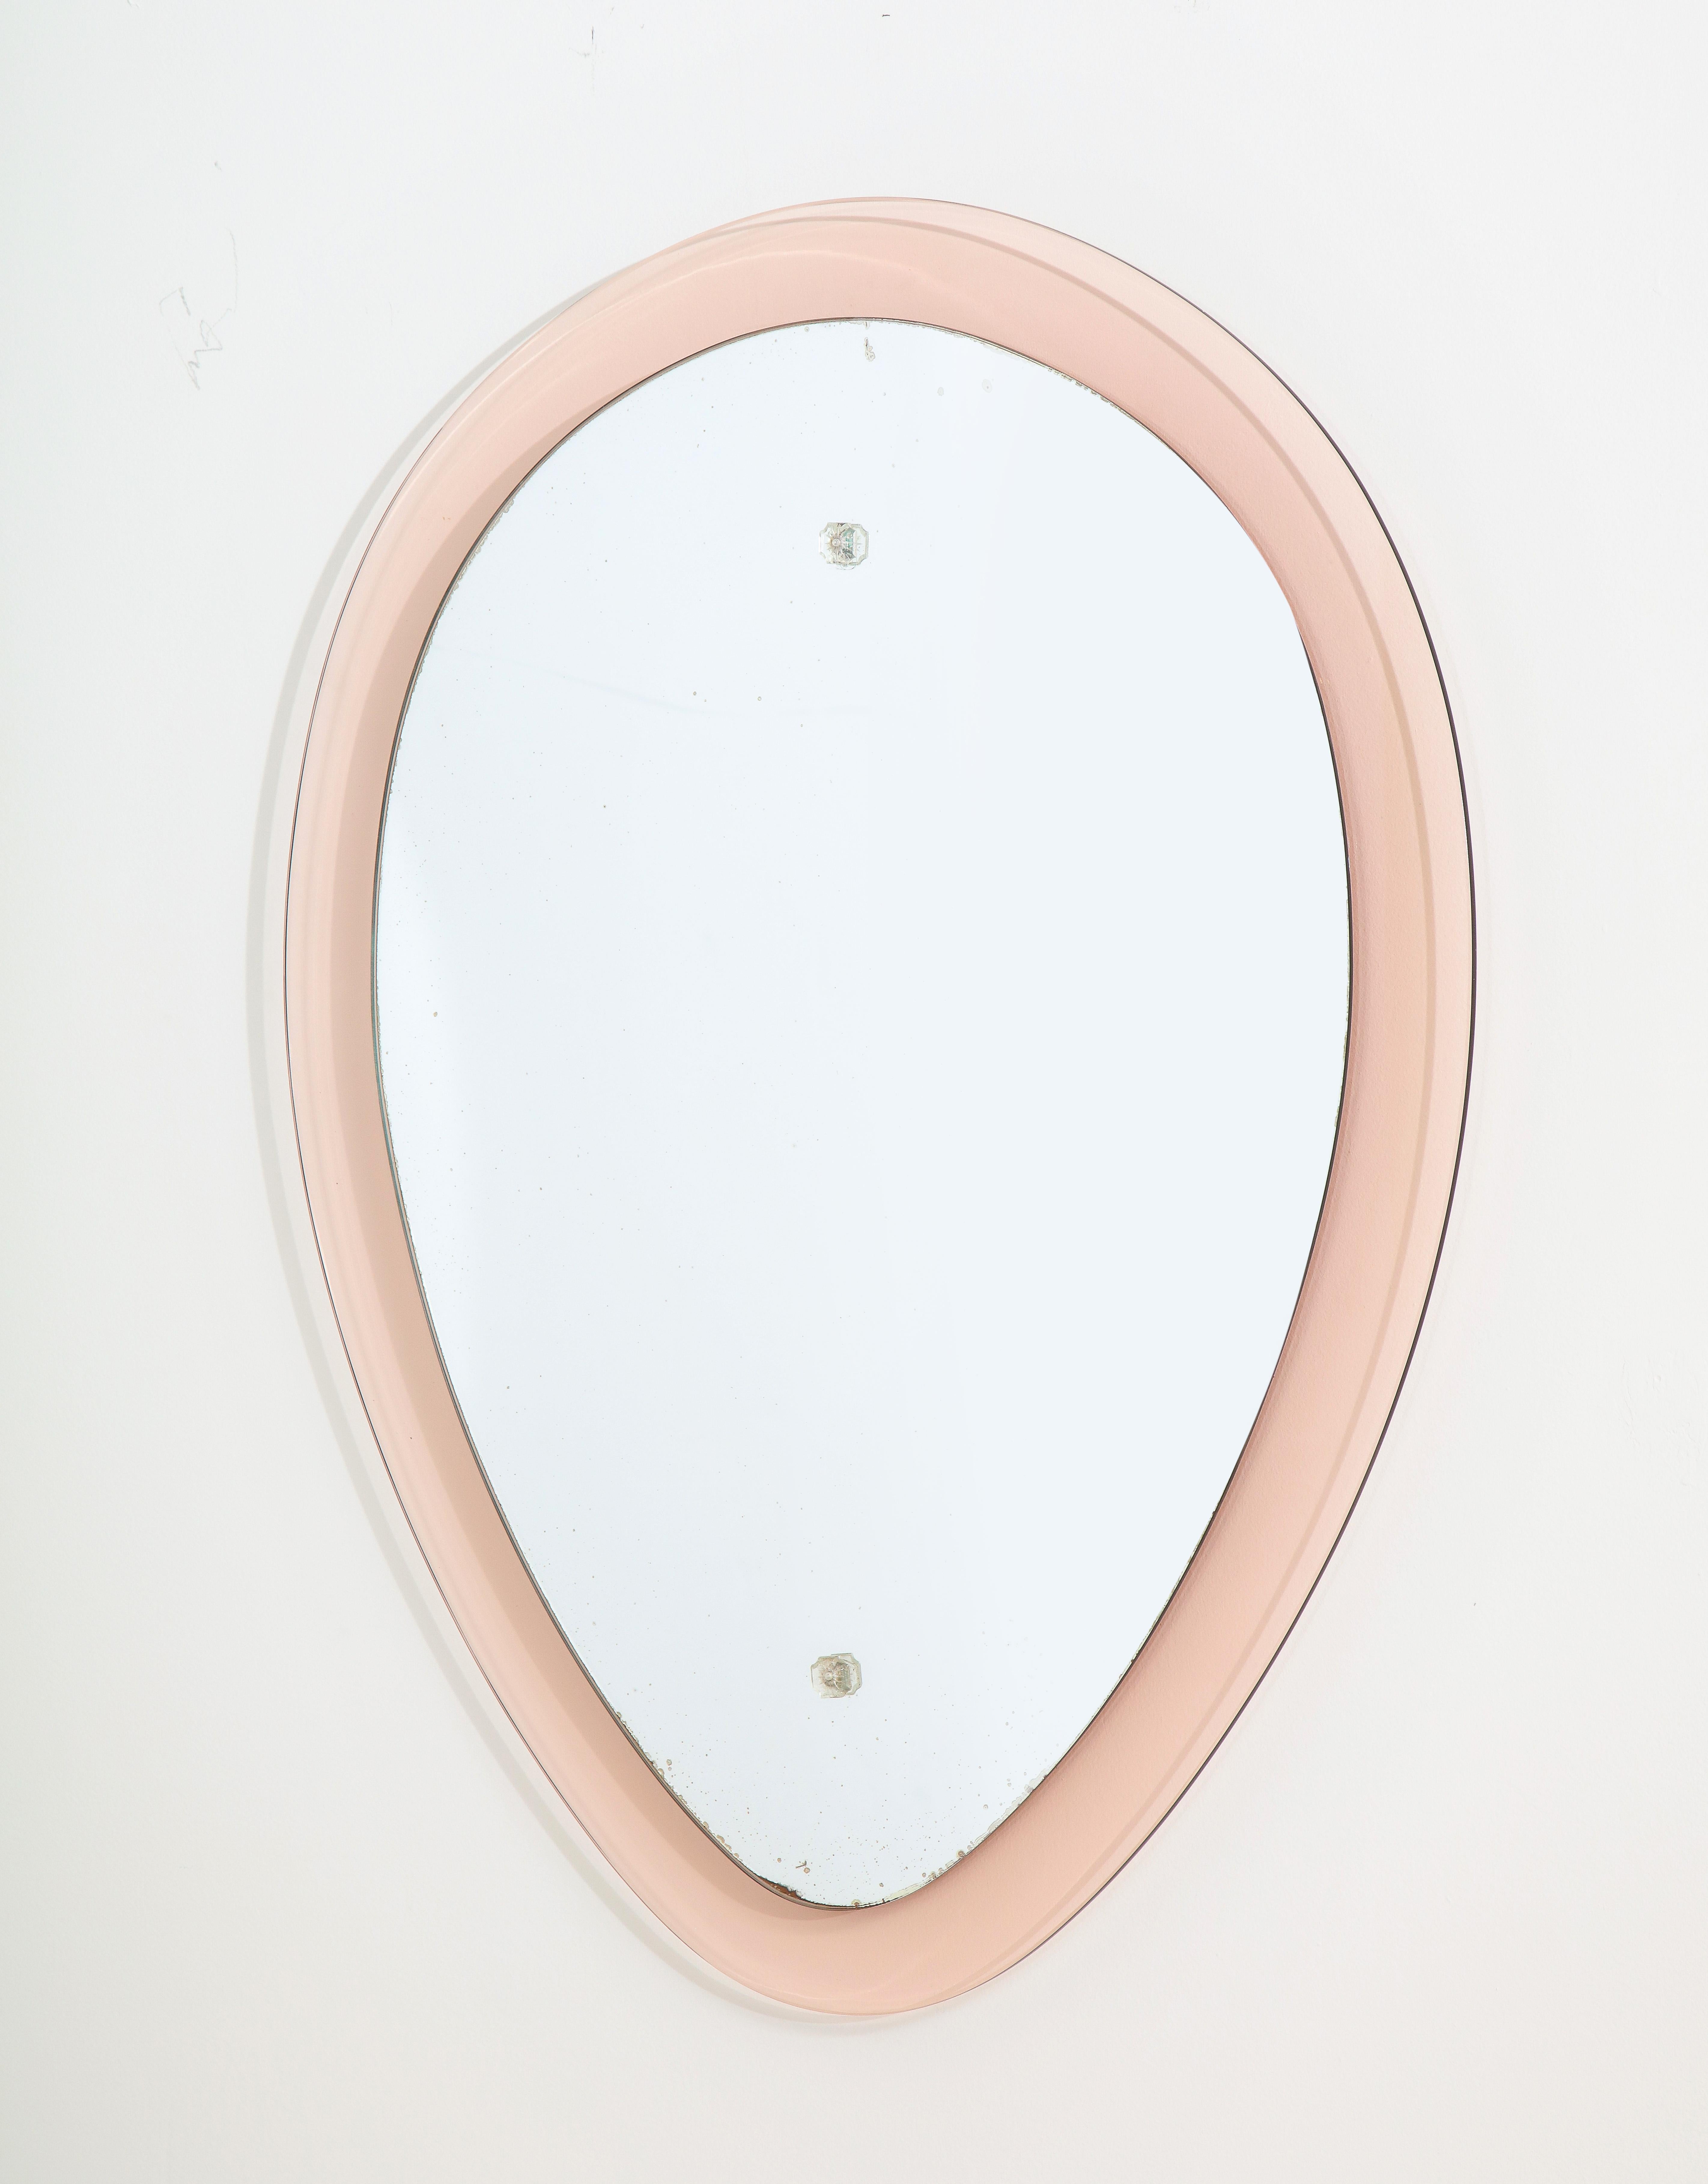 Un beau miroir italien en verre rose pâle et transparent en forme de goutte d'eau inversée. La section médiane ovale est en verre clair et est surélevée, ce qui donne un effet de flottement. La quincaillerie sur le verre clair est en cristal.